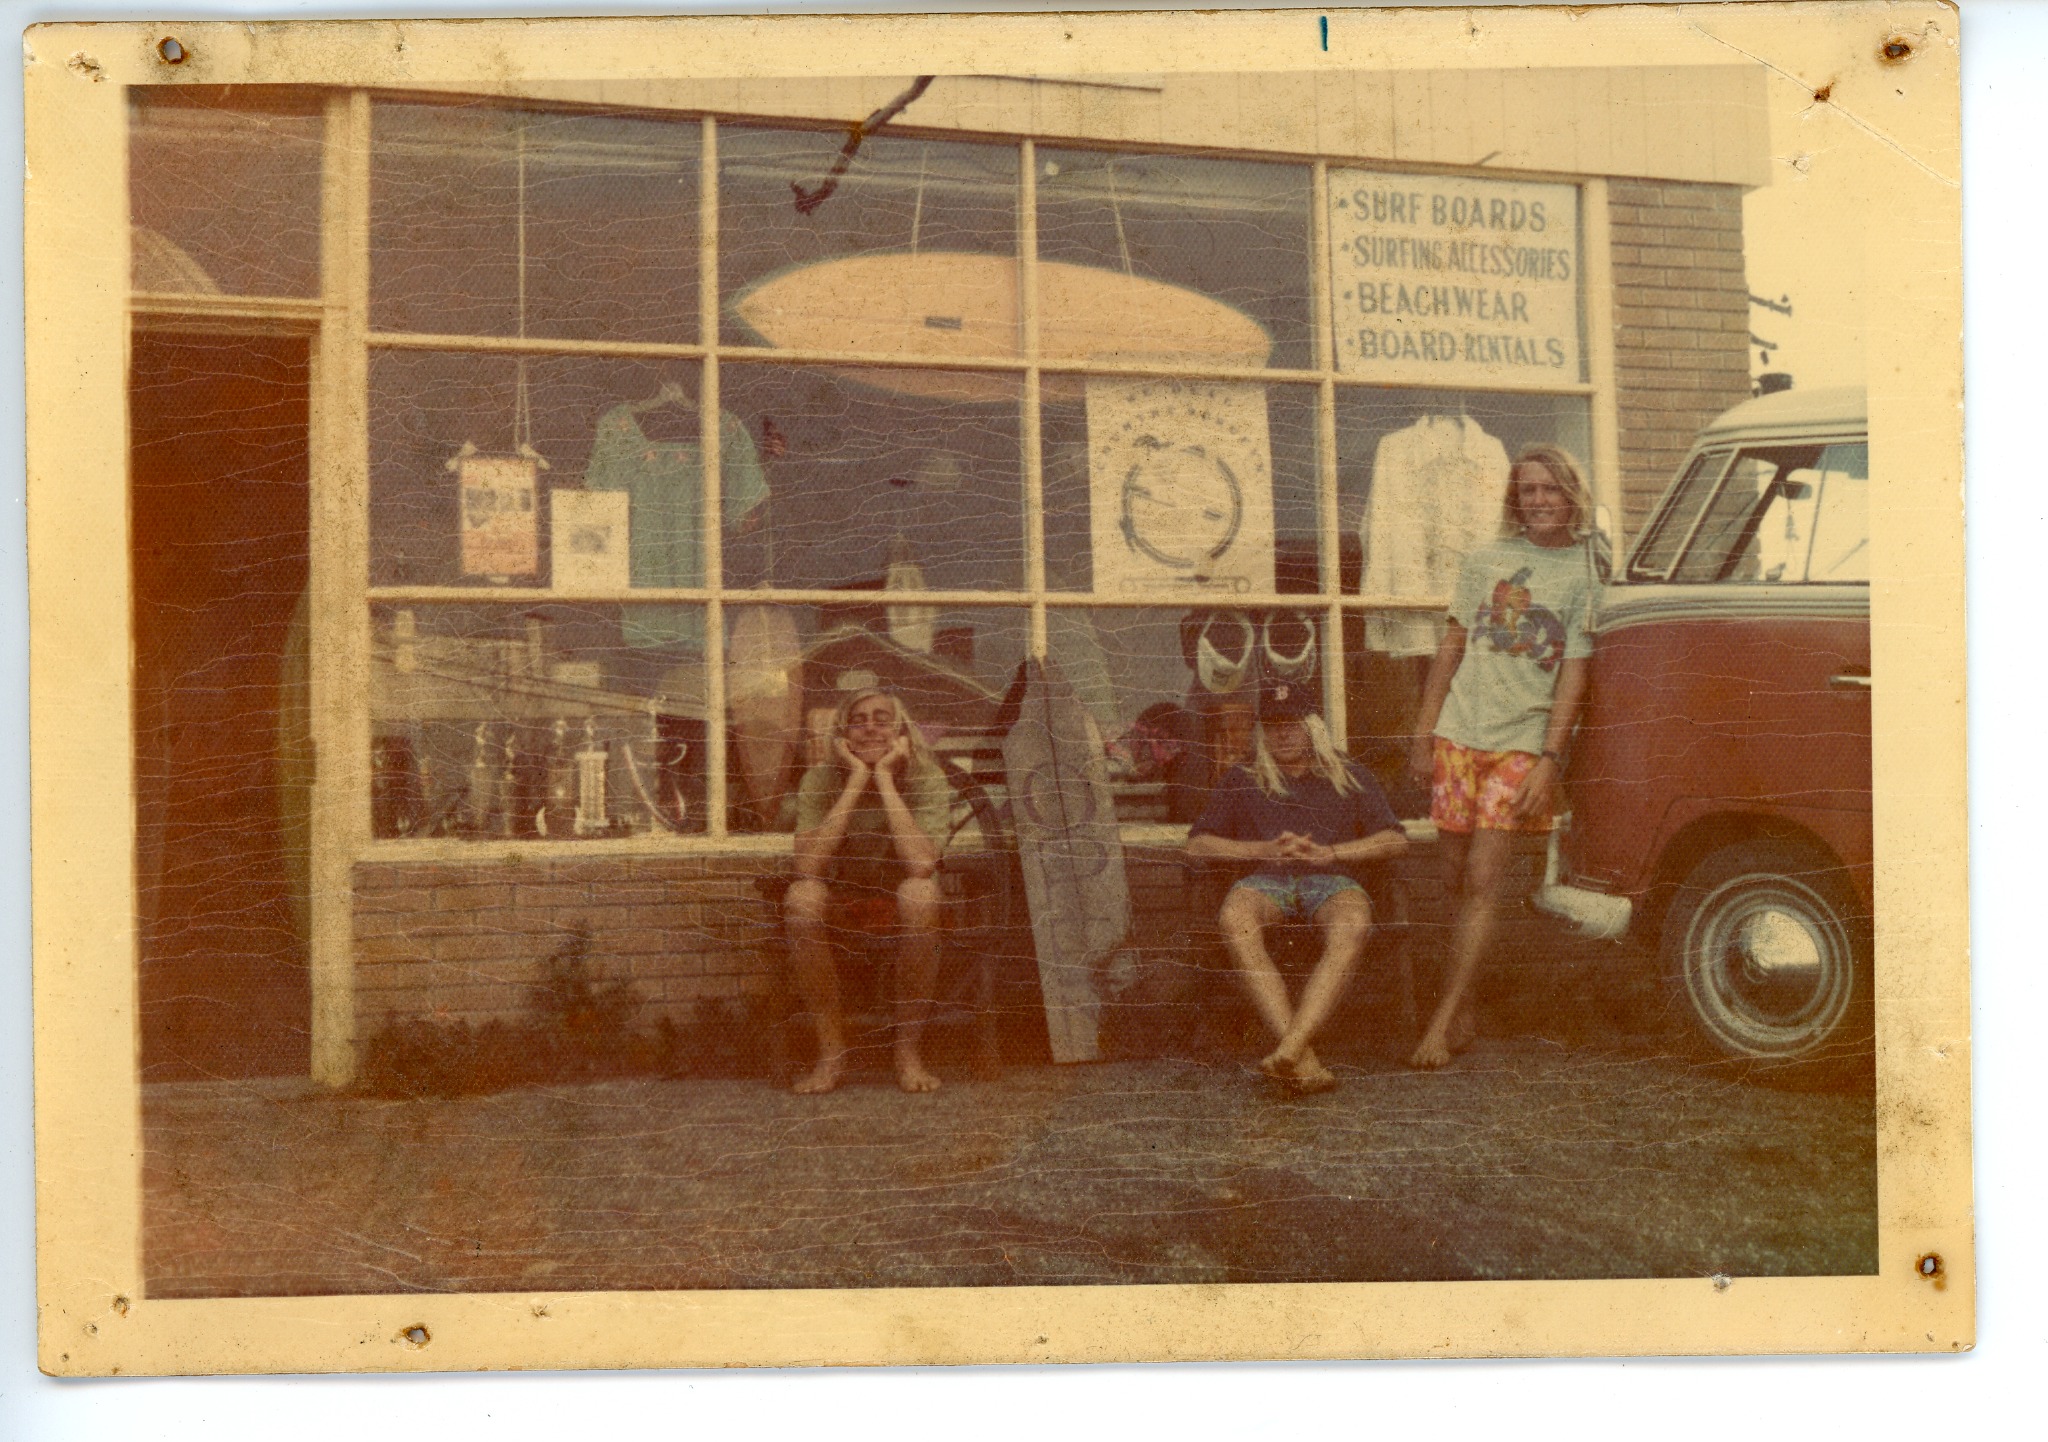 MTK First Surf Shop | 1970s